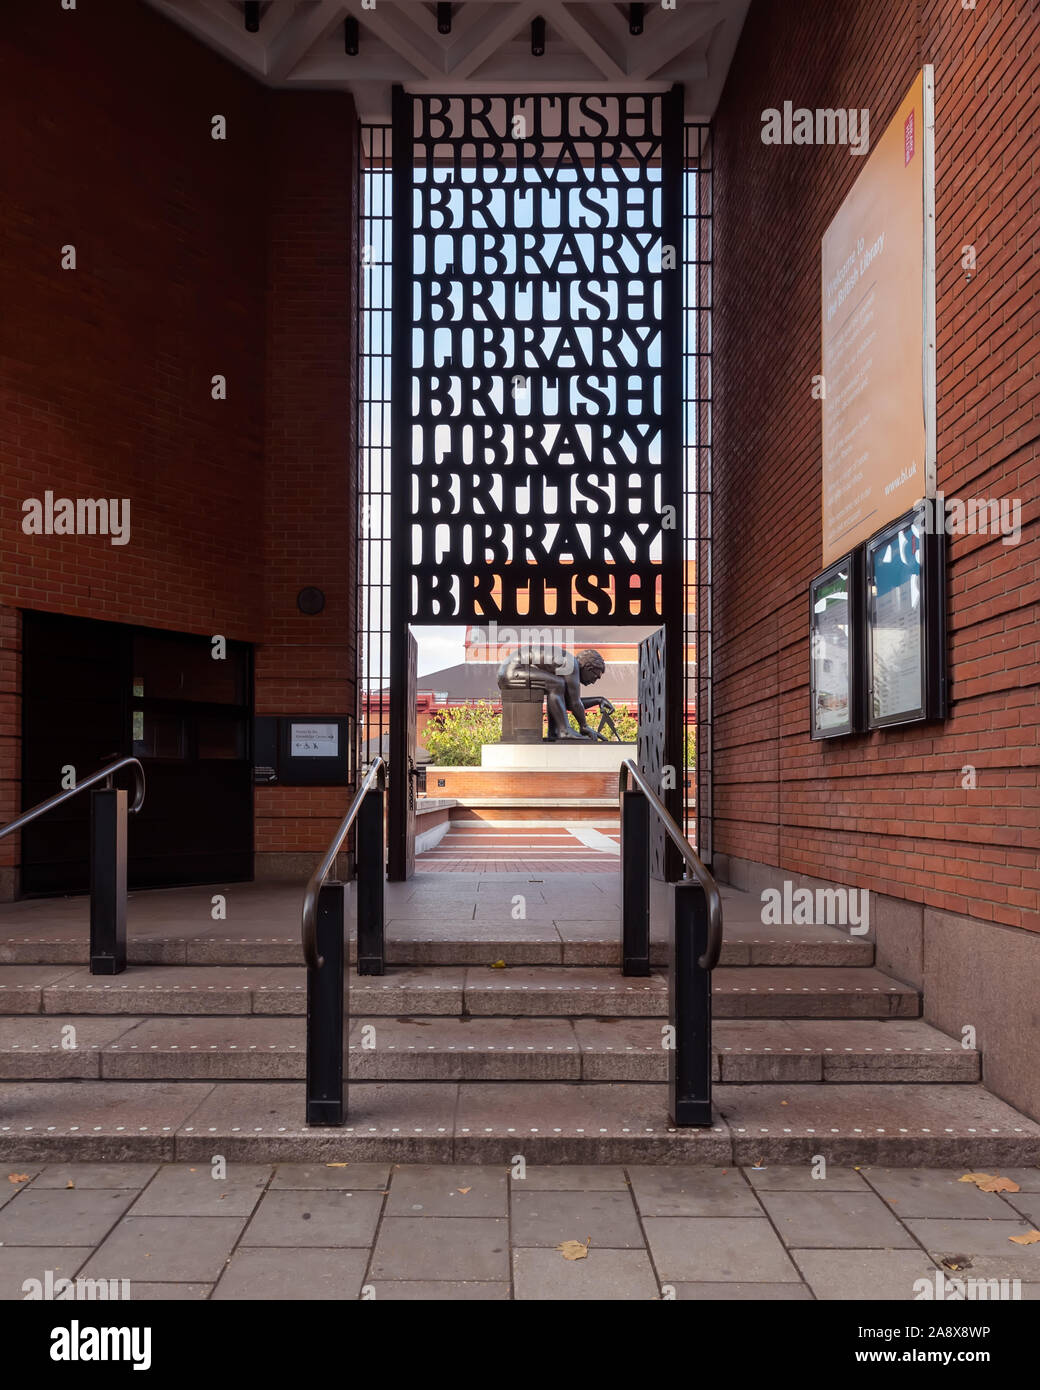 11.09. 2019. London, UK,  British library entrance. Stock Photo